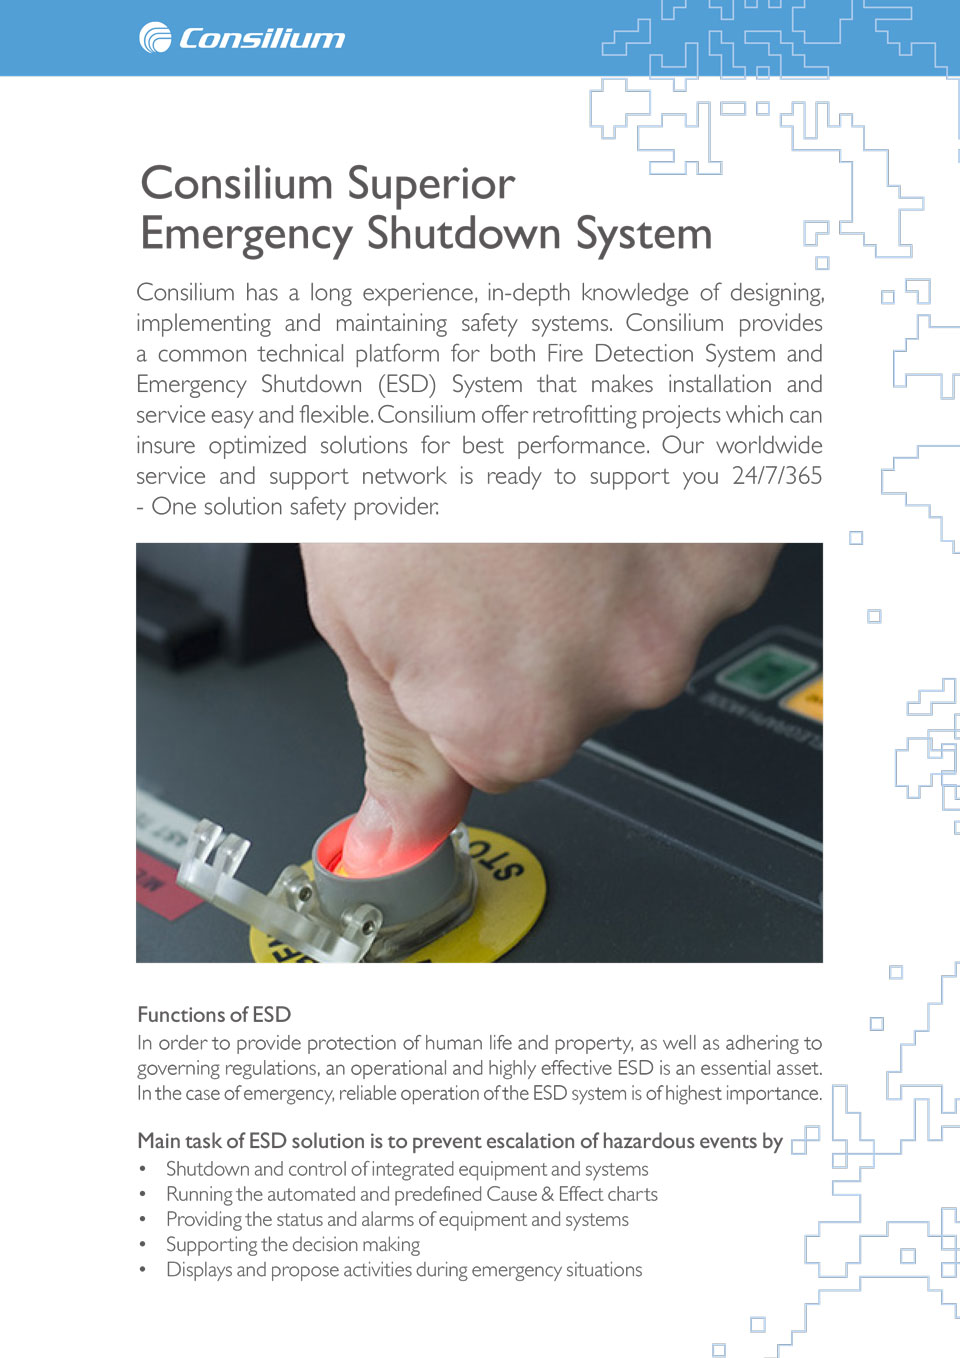 Emergency Shutdown (ESD)